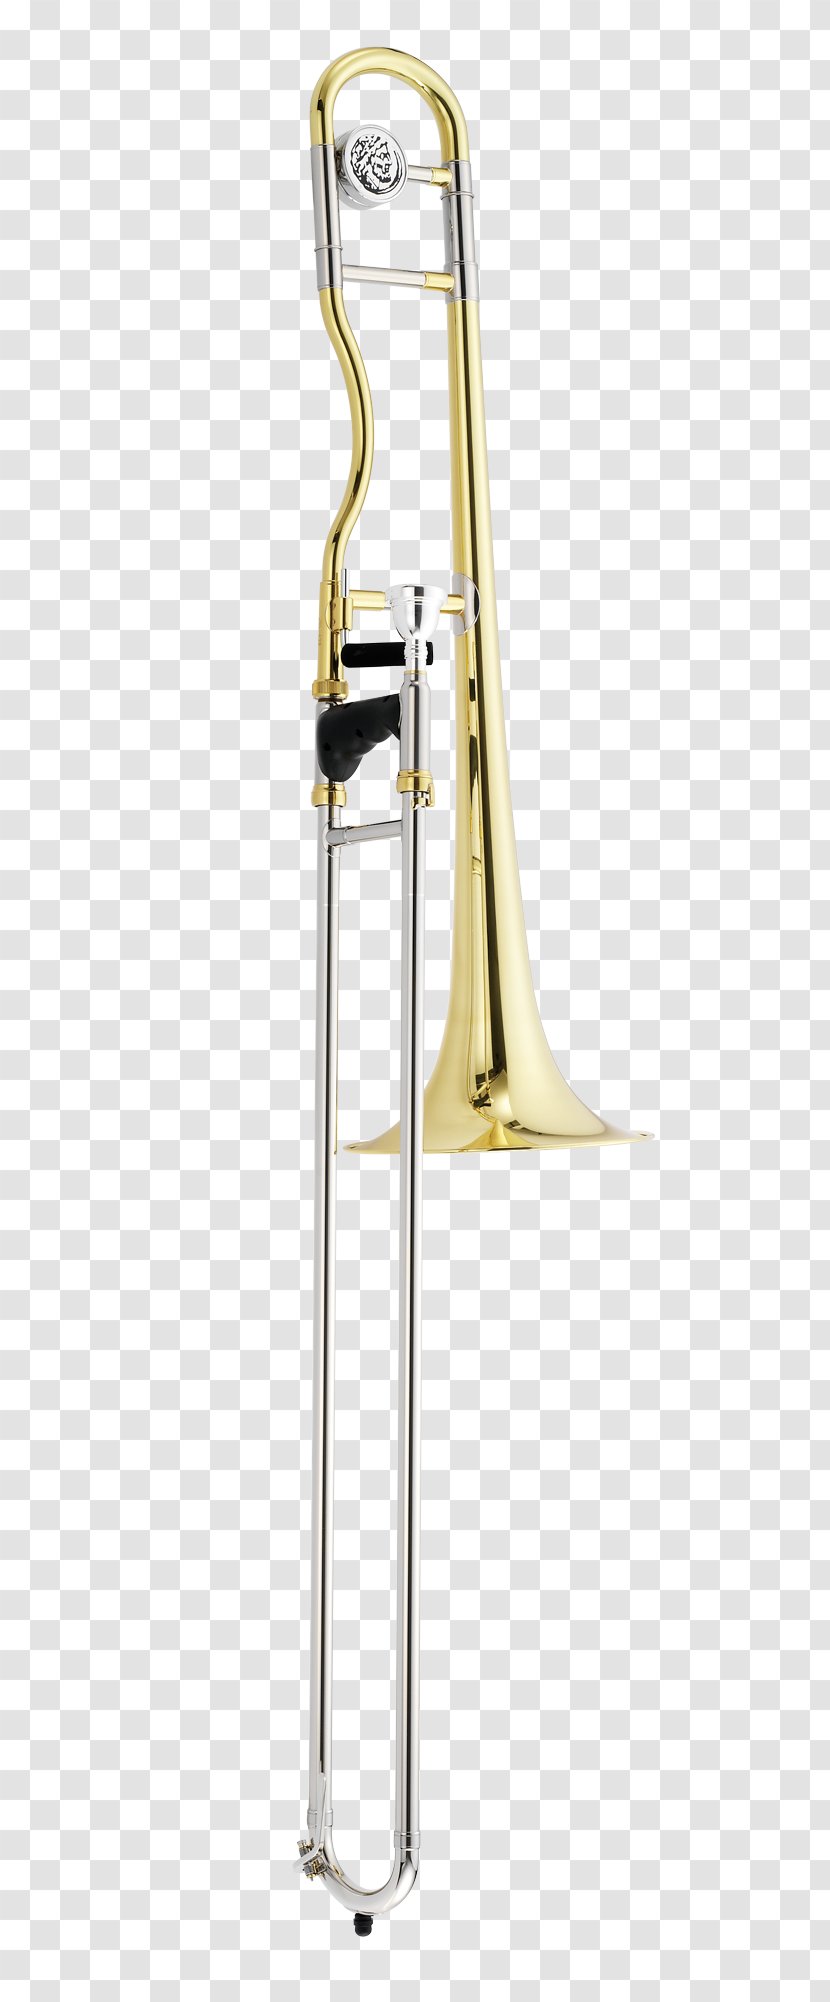 Types Of Trombone Flugelhorn Saxhorn Mellophone Transparent PNG